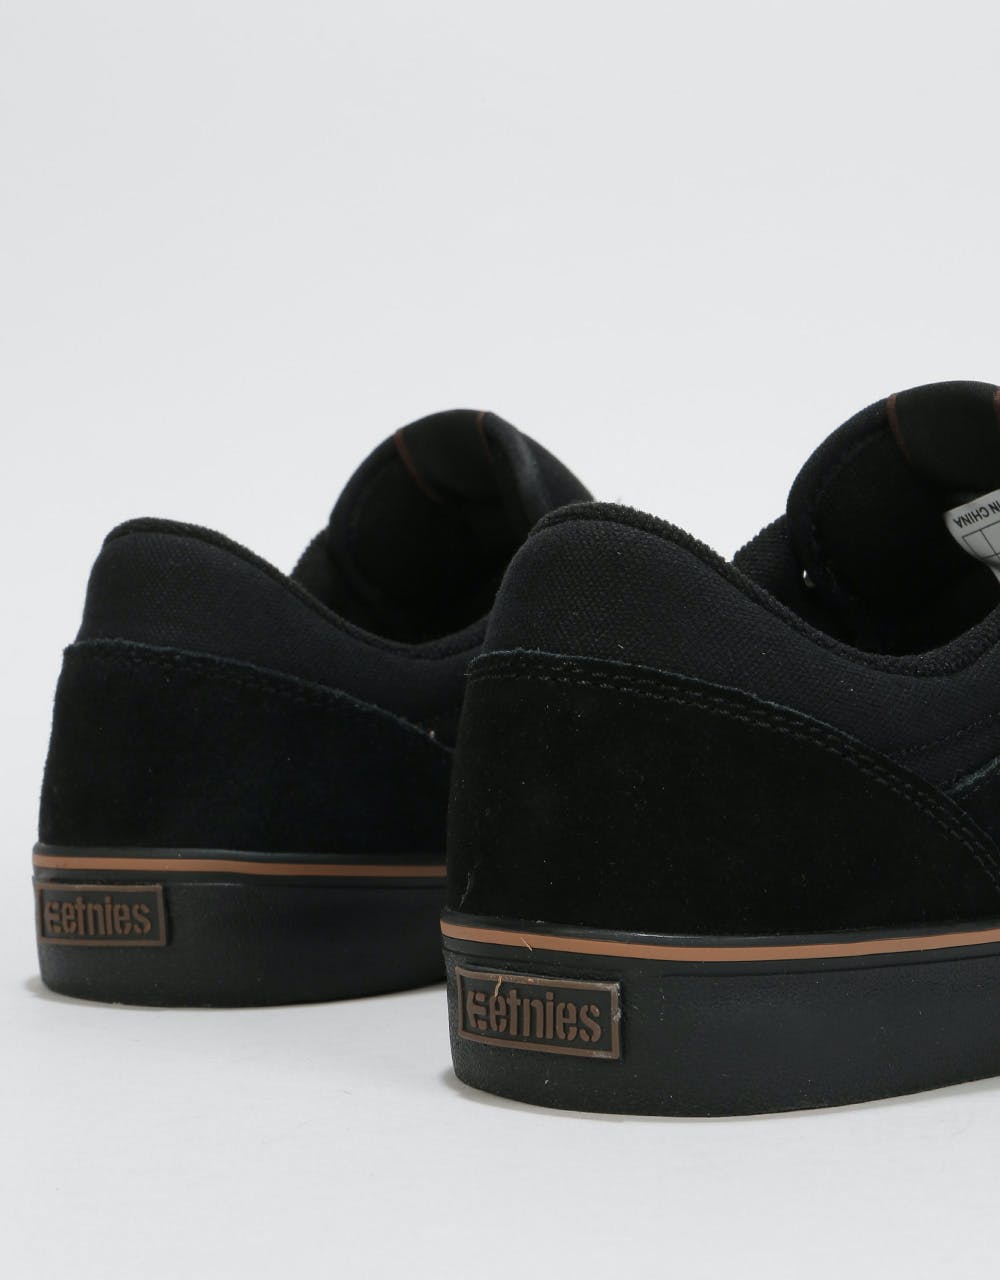 Etnies Marana Vulc Skate Shoes - Black/Dark Grey/Gum